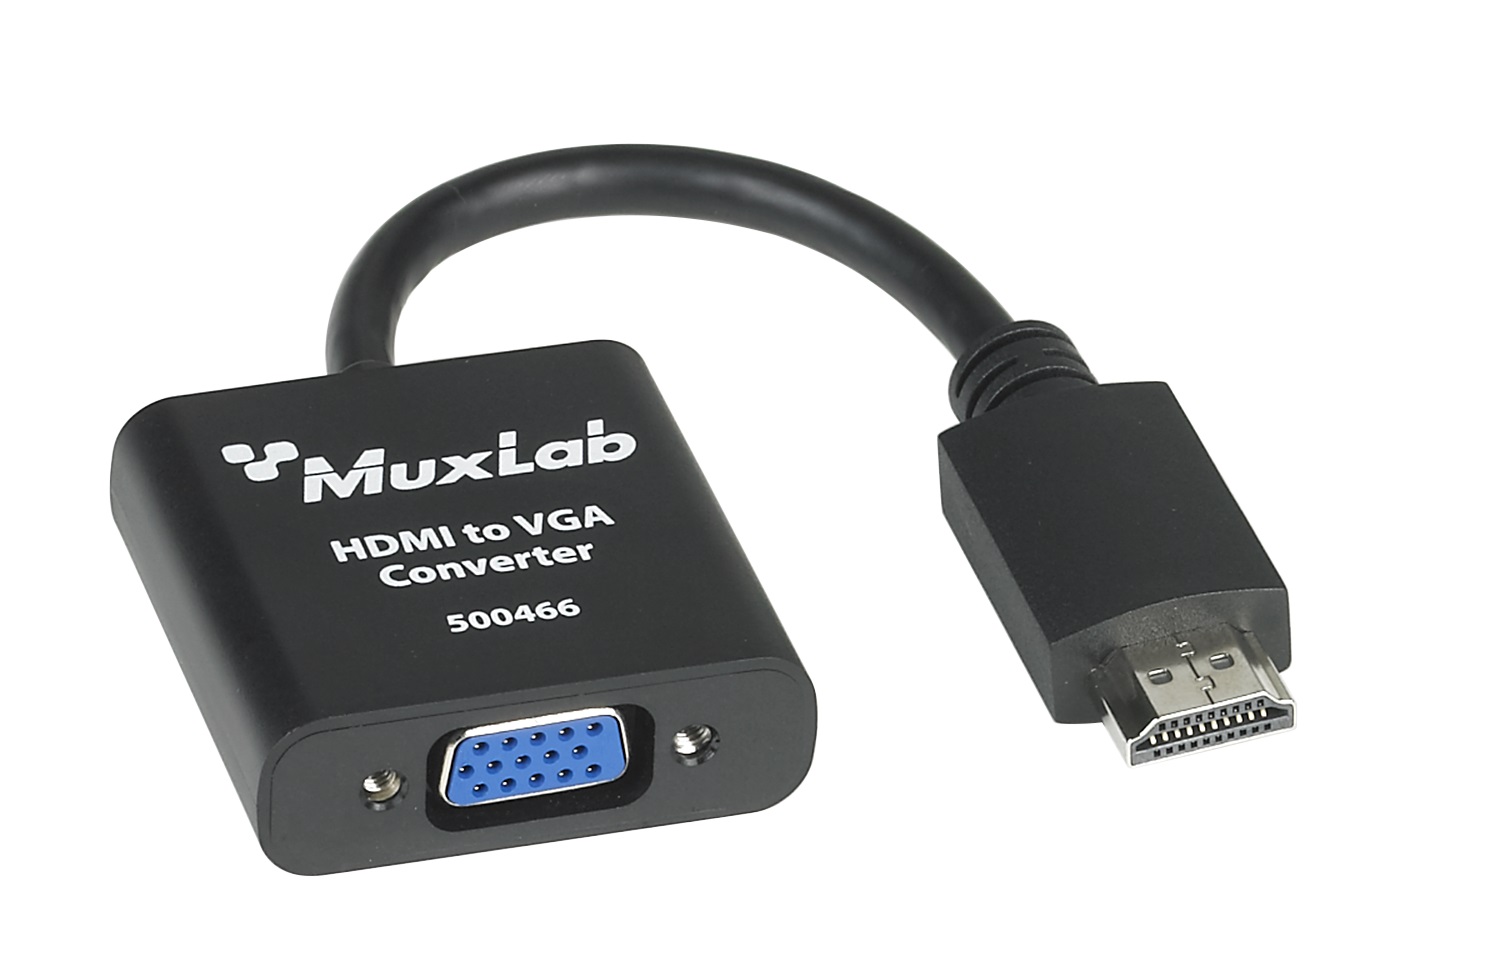 Muxlab 500466